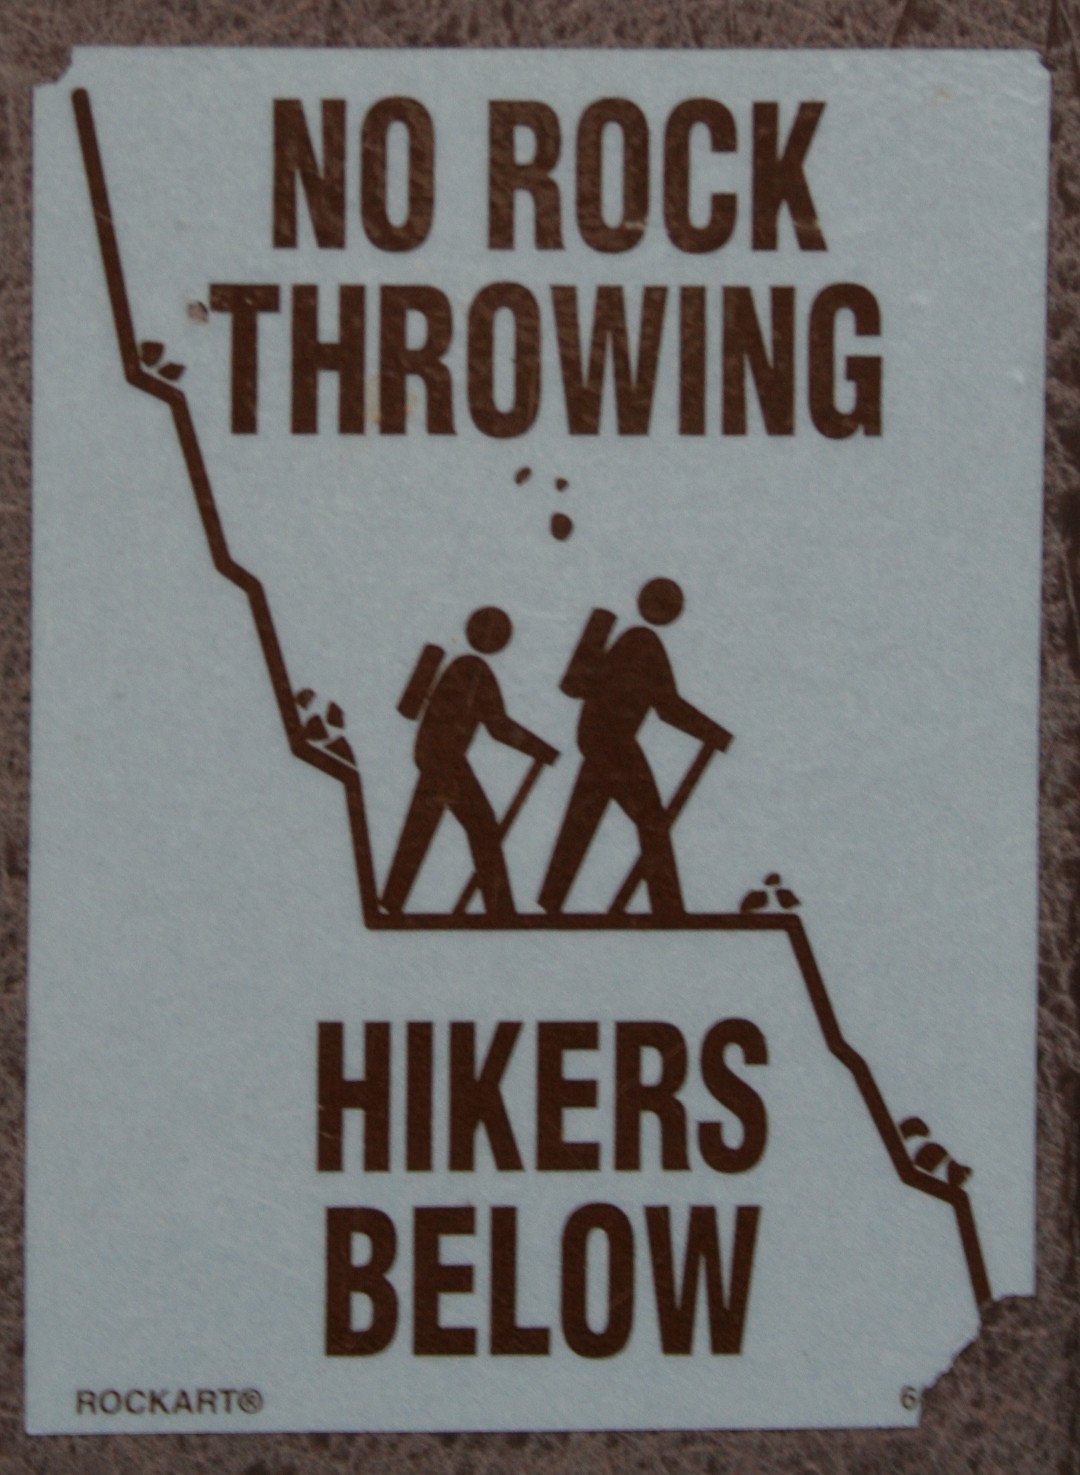 no rock throwing, hikers below